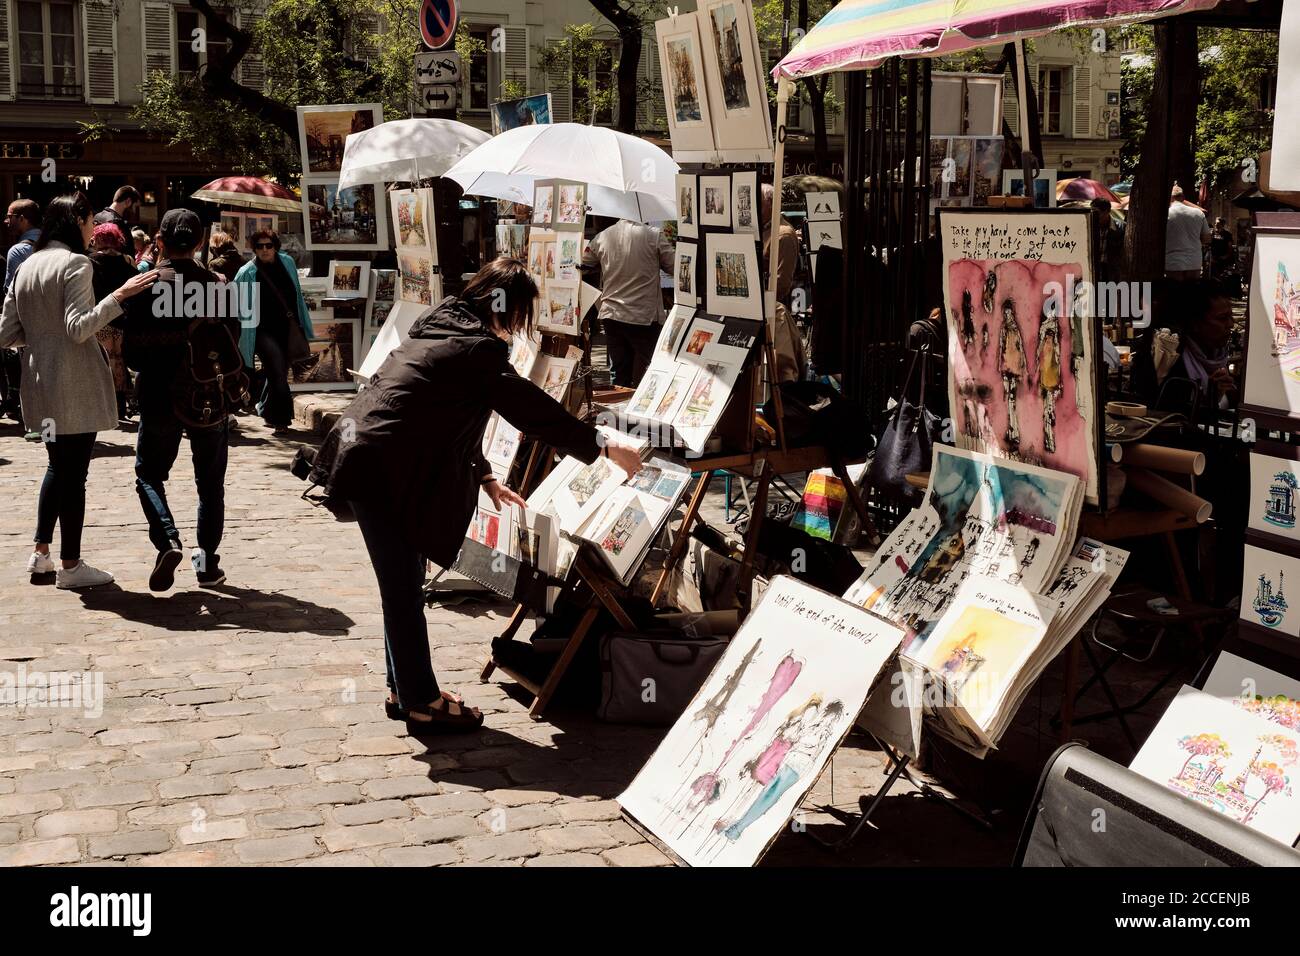 Europe, France, Paris, Montmartre, artistes peignant et vendant des œuvres d'art dans la rue, femme regardant des images Banque D'Images